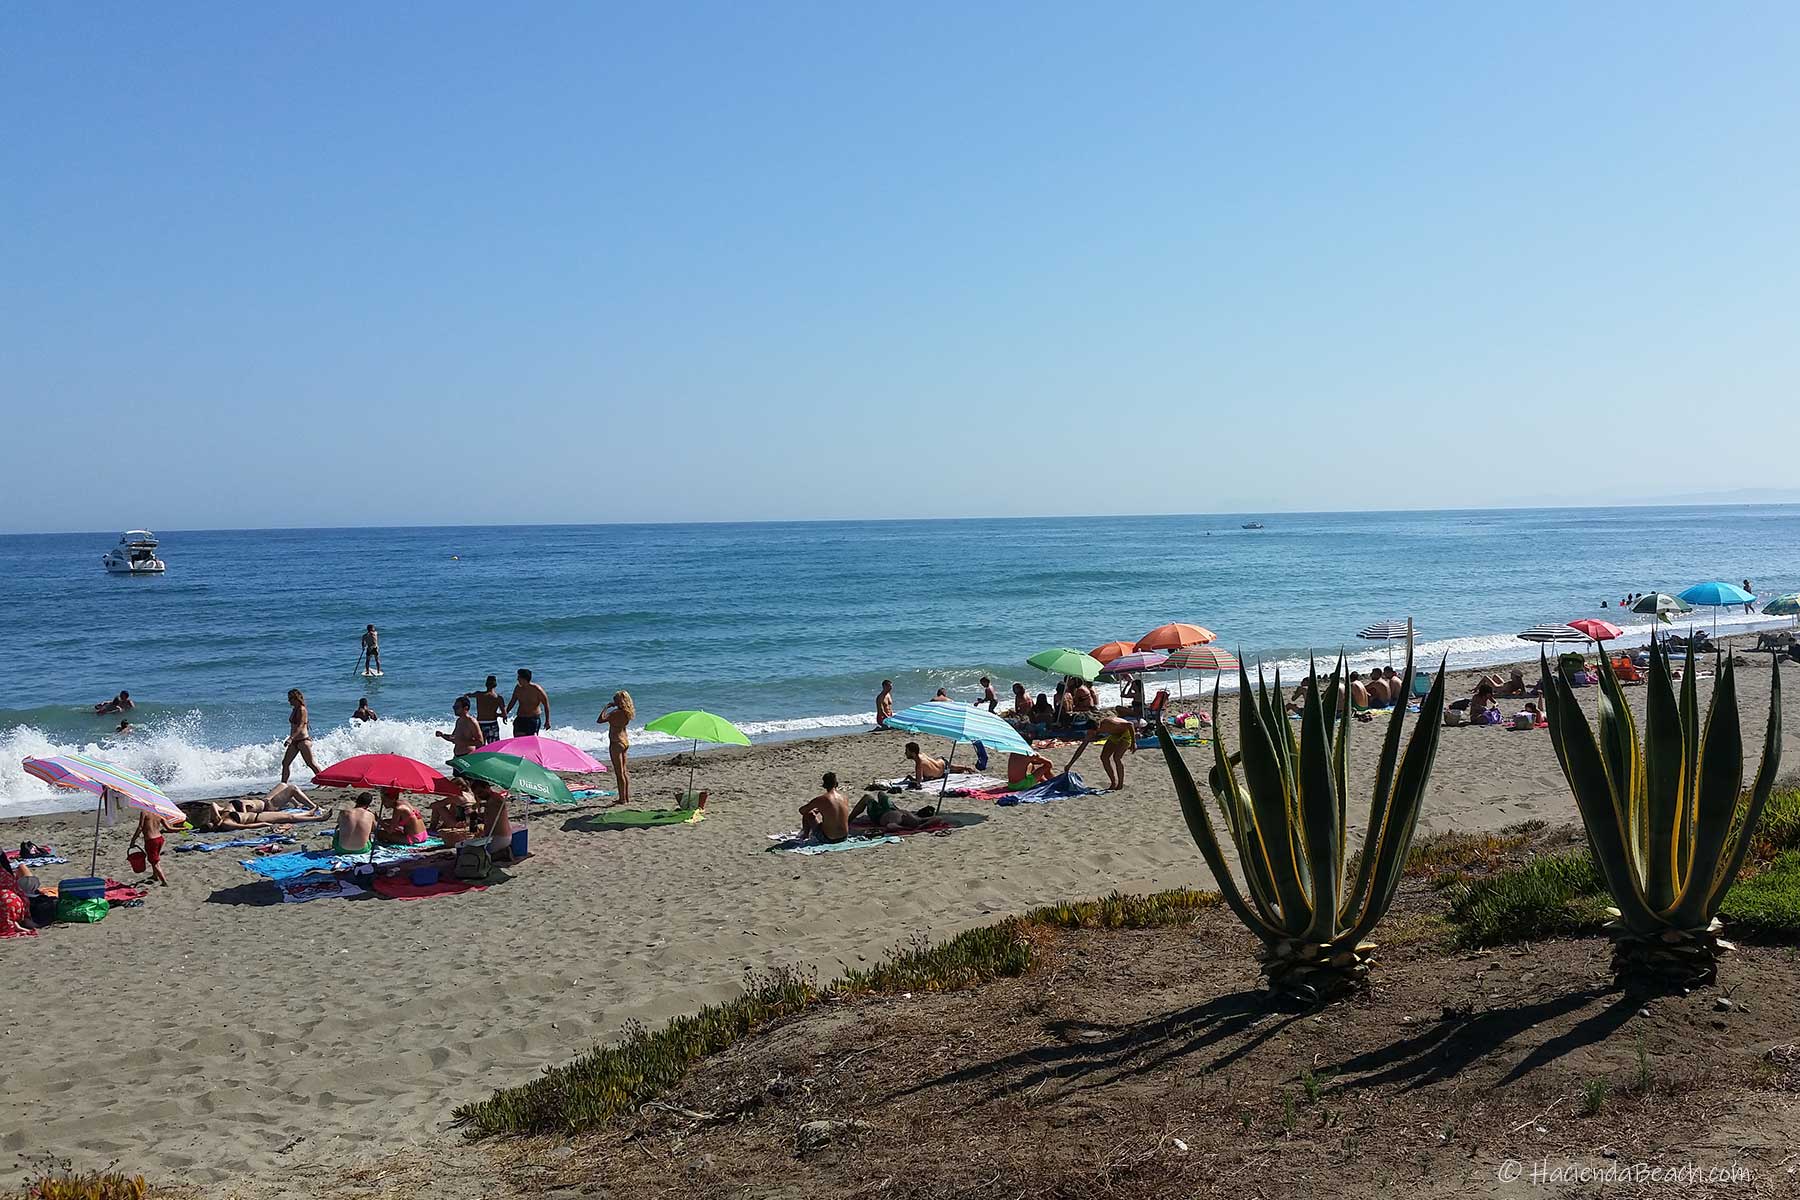  Arroyo de las Cañas beach in front of Hacienda Beach